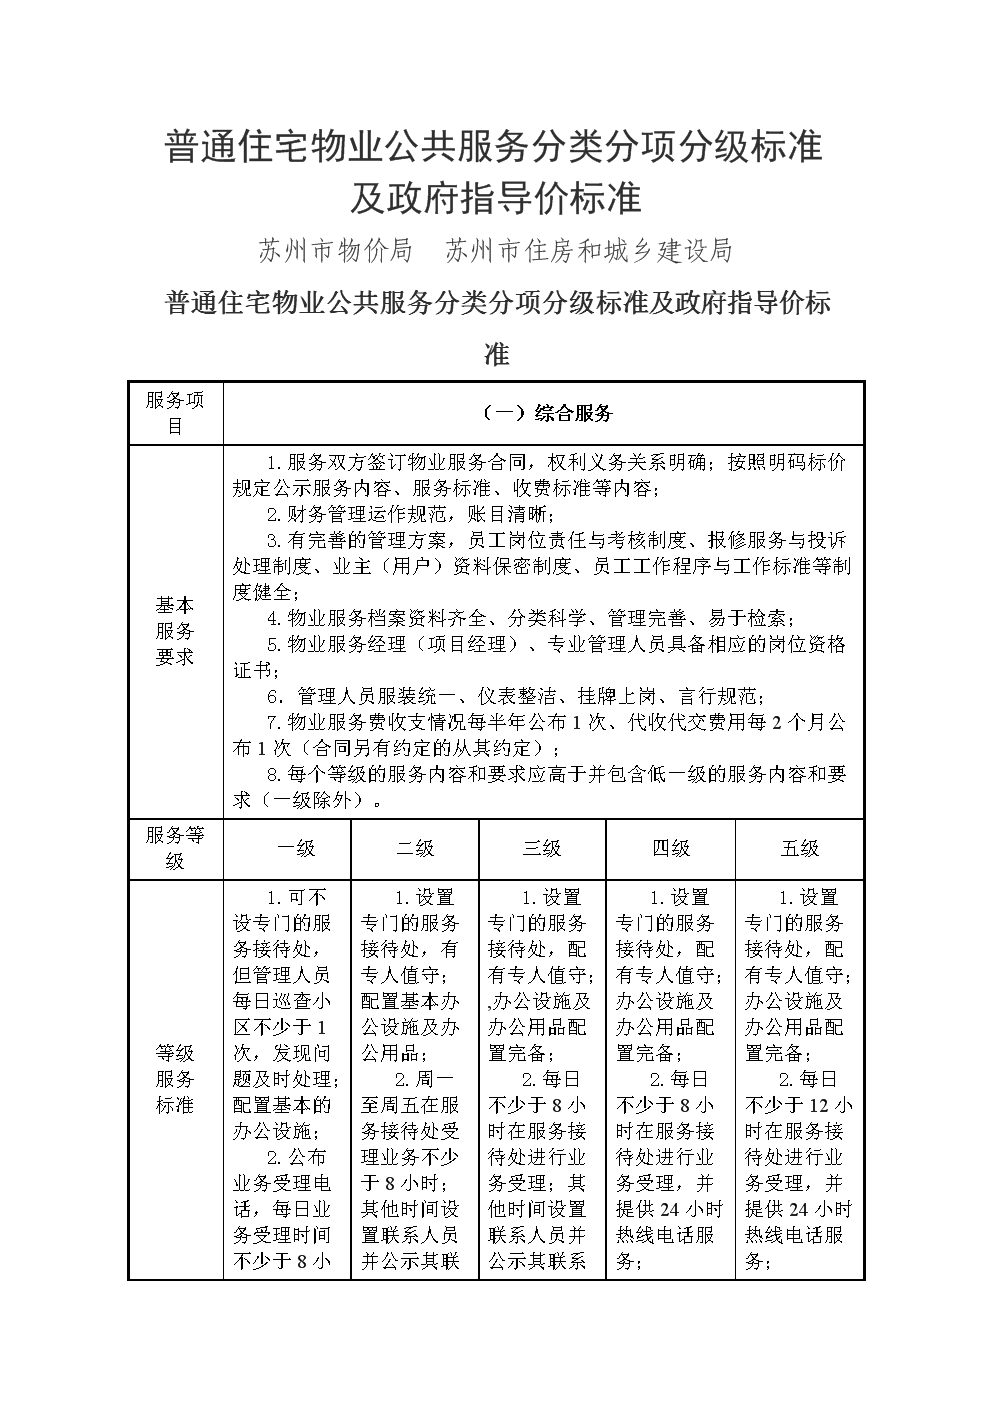 北京市住房城乡建设委制定《北京市住宅项目物业服务综合监管实施方案(试行)》